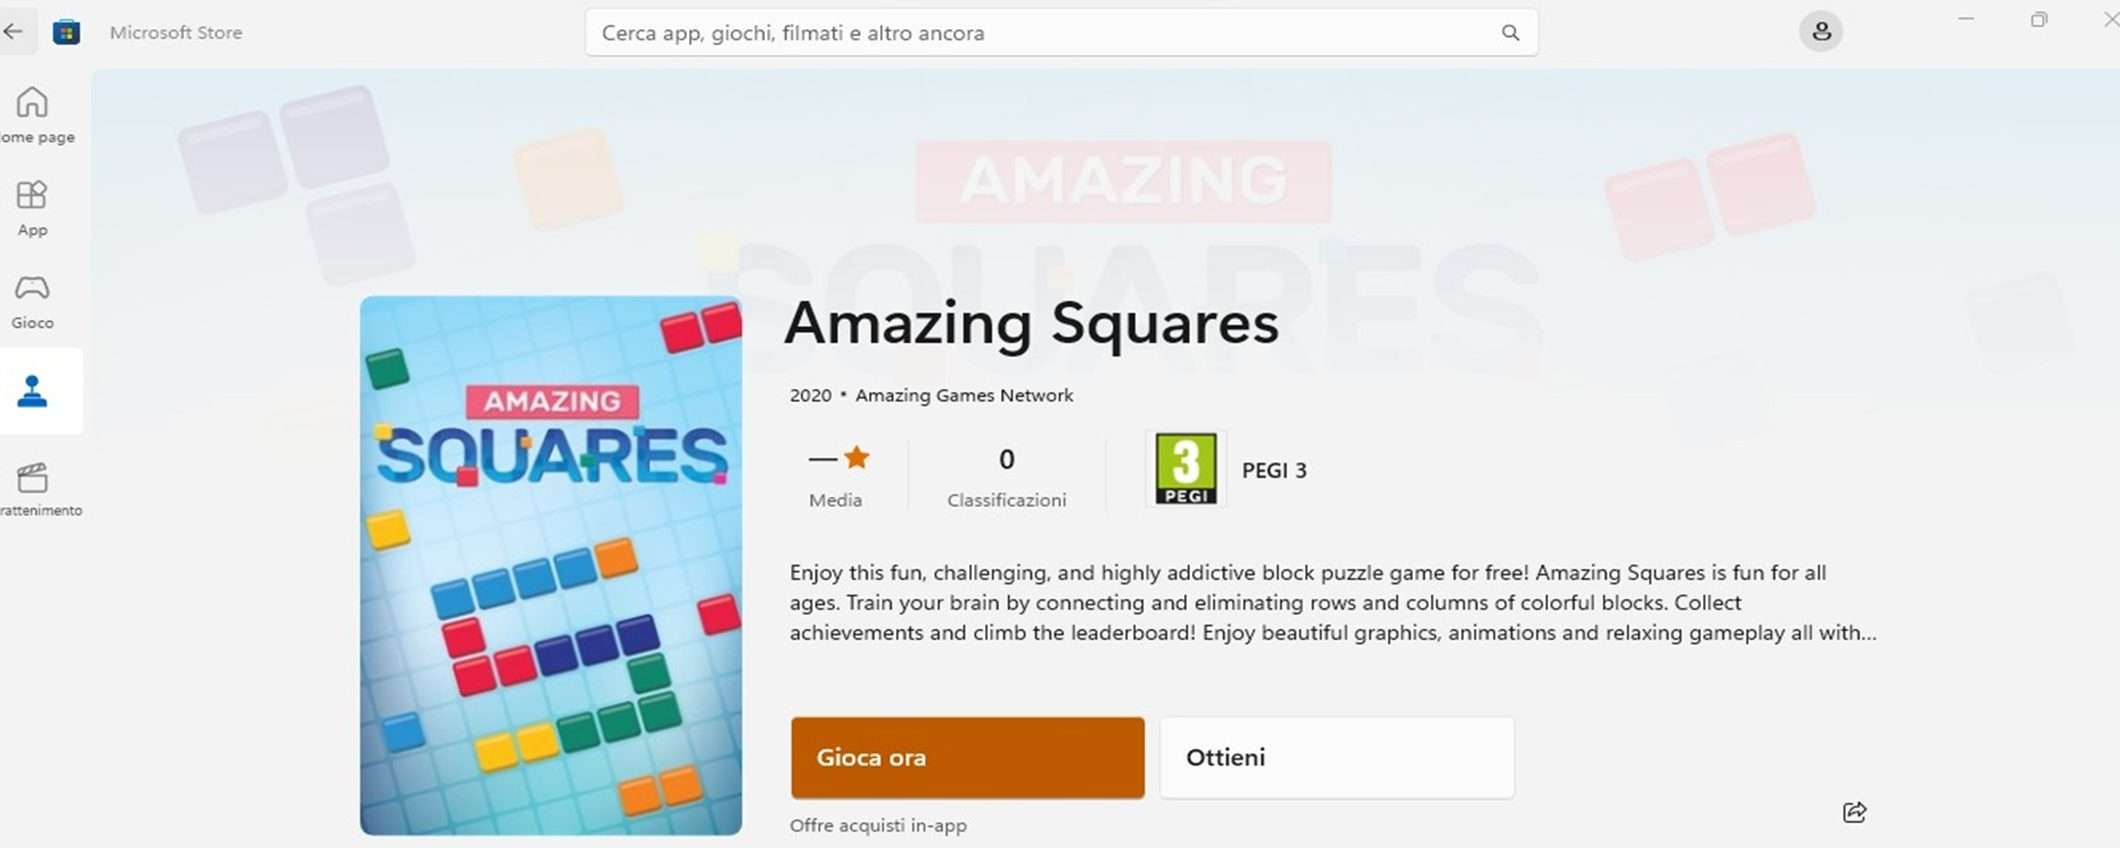 Su Microsoft Store arrivano i giochi senza download grazie ad Arcade